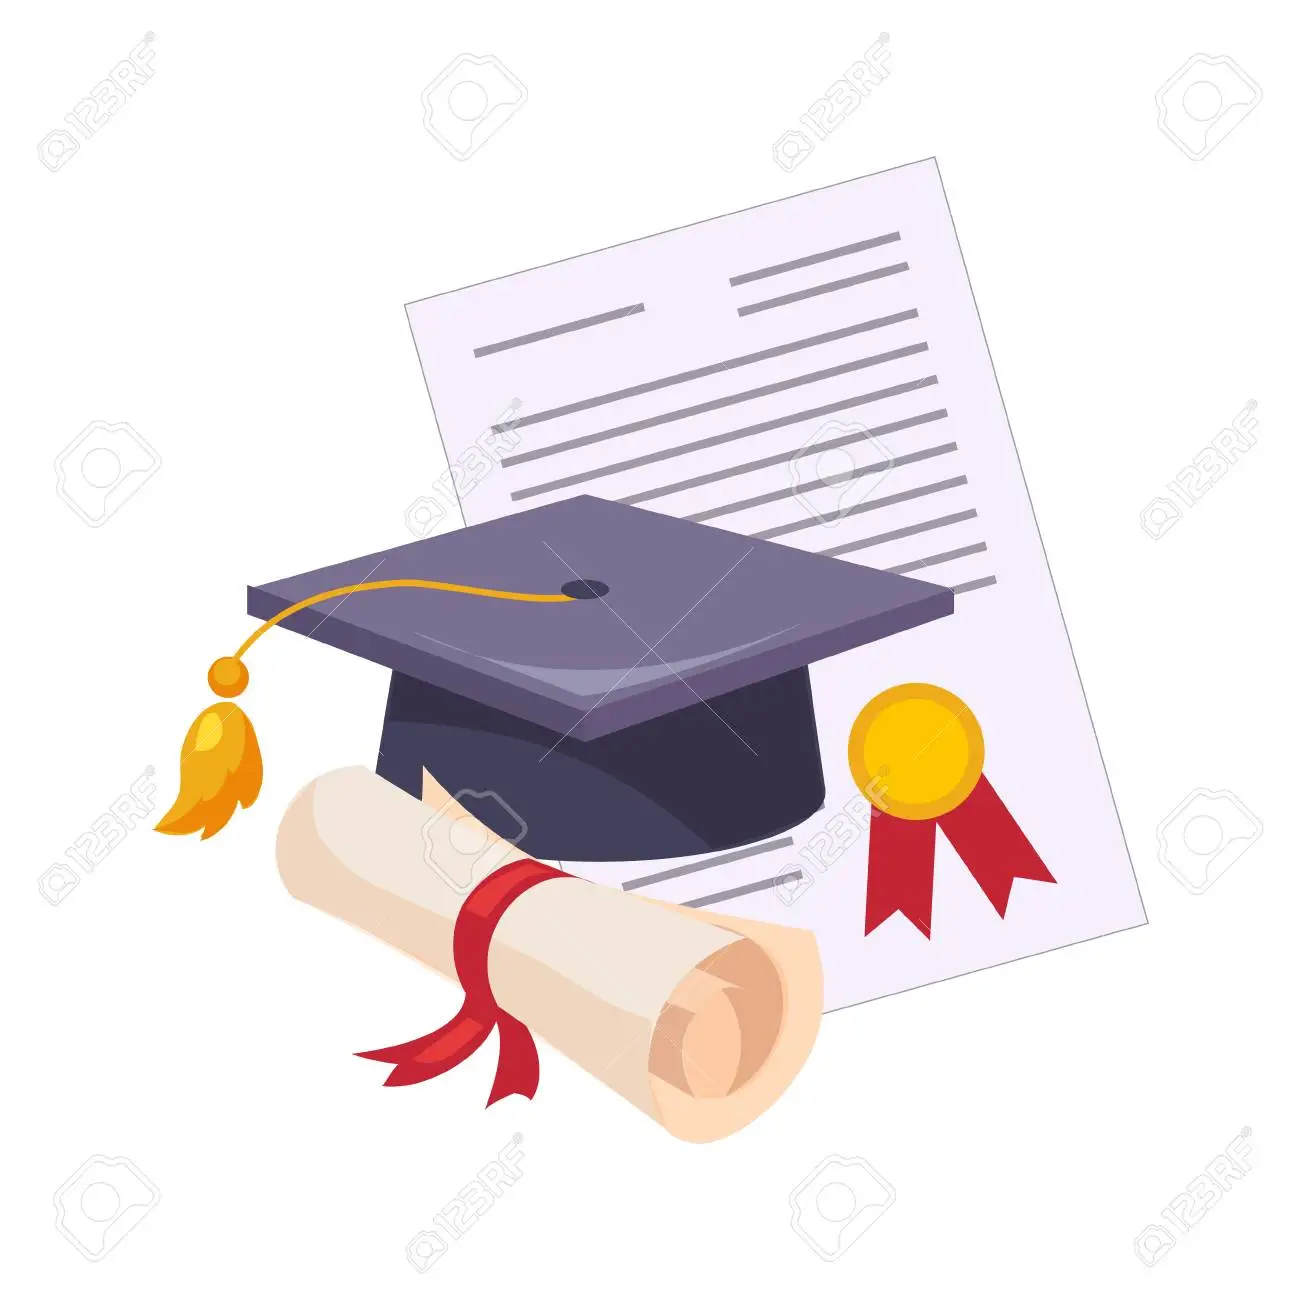 76172566-chapeau-de-graduation-et-diplôme-ensemble-d-école-et-d-objets-liés-à-l-éducation-dans-le-style-de.webp